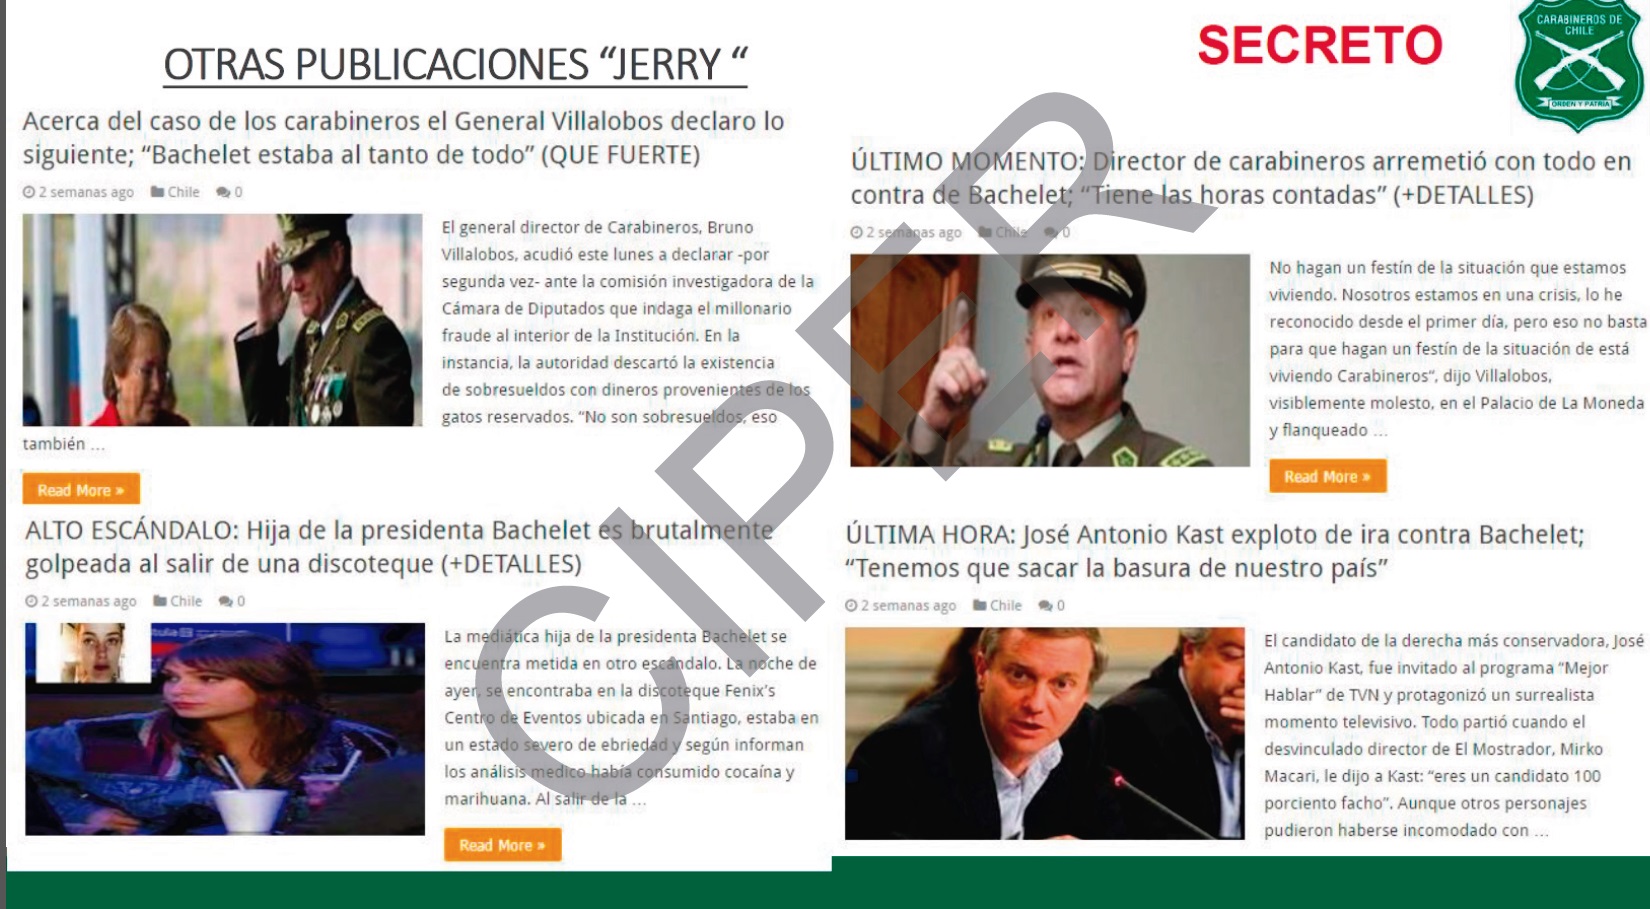 Pericias realizadas en la UIOE sobre noticias falsas publicadas en internet que mencionaban a Bruno Villalobos y a Michelle Bachelet